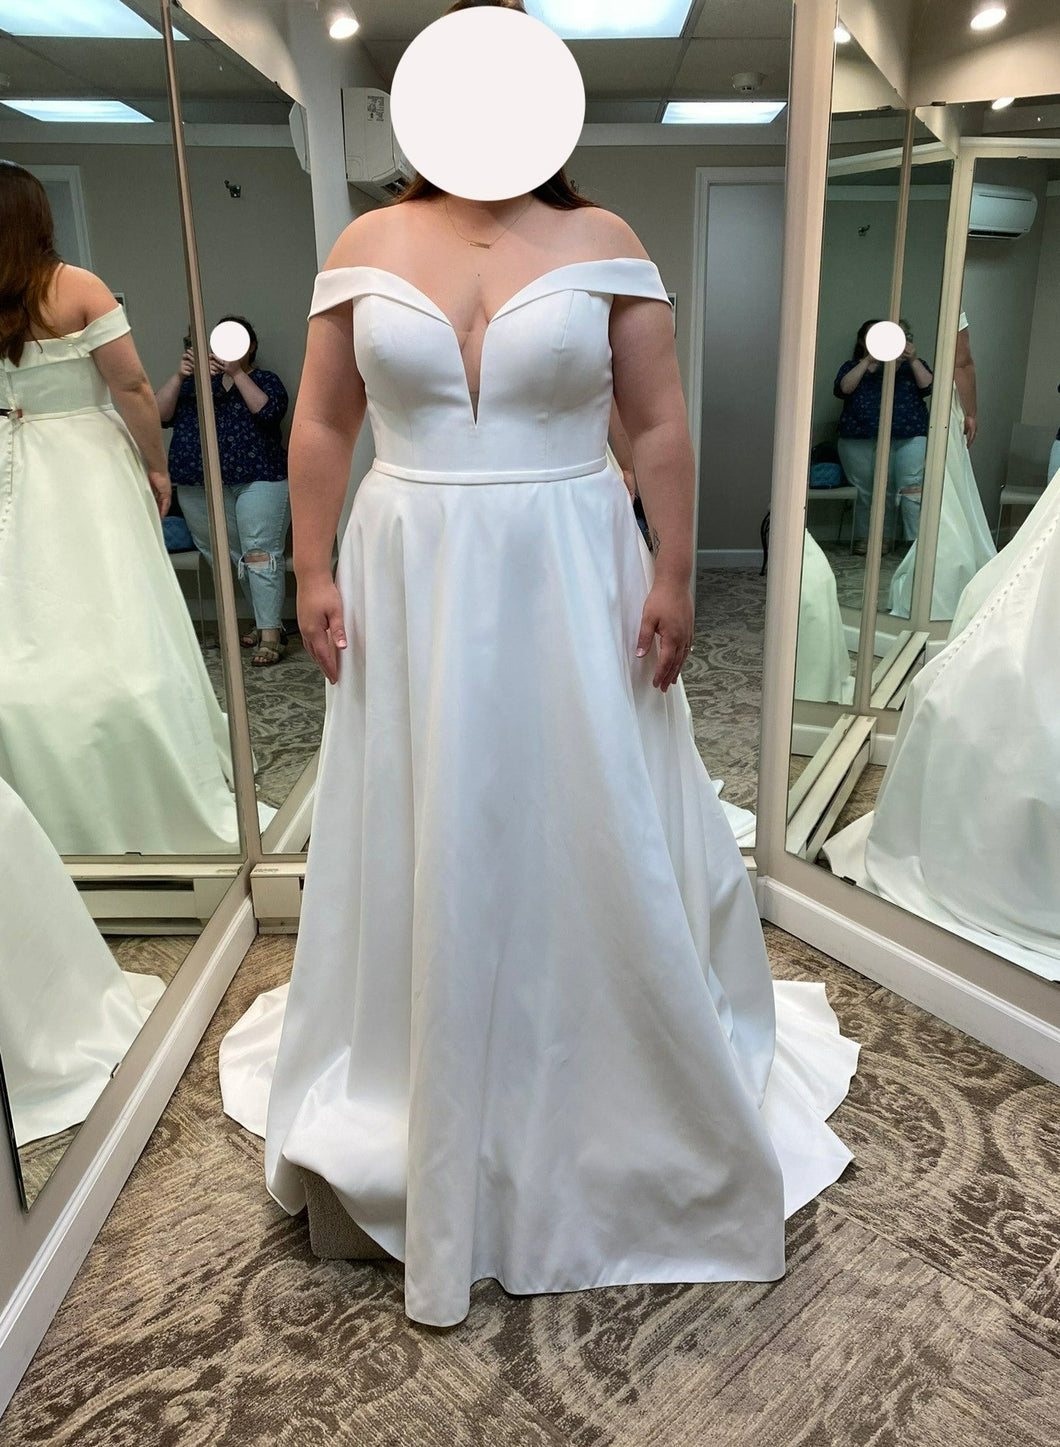 Essense of Australia '121023' wedding dress size-16W NEW